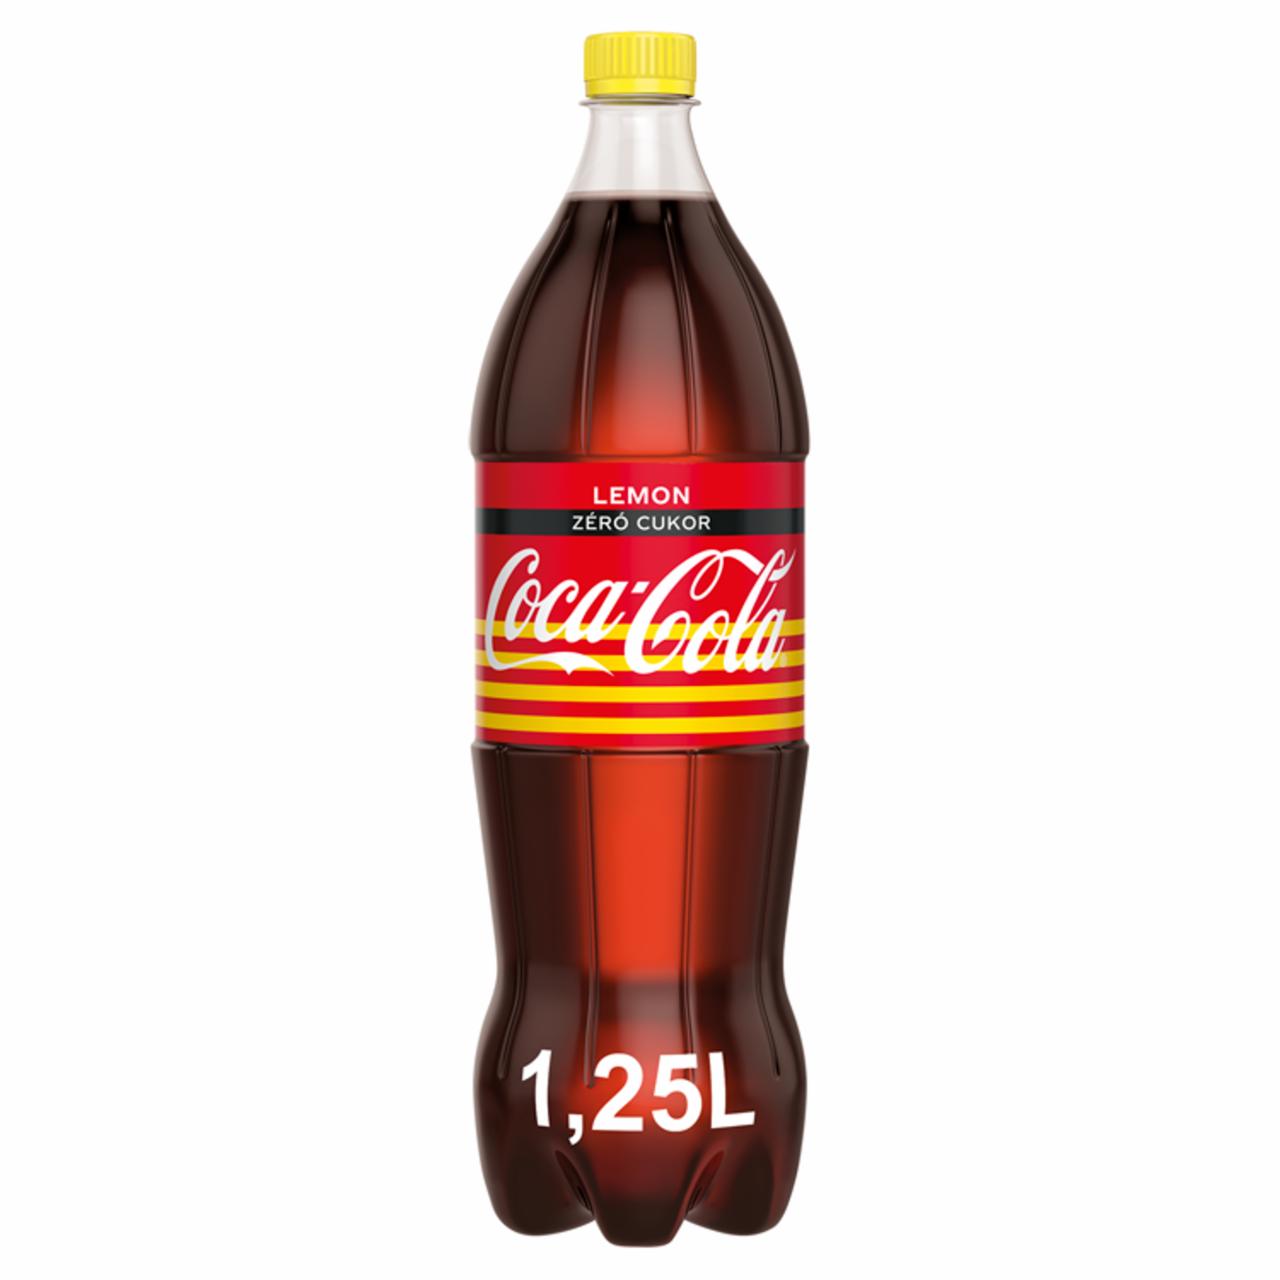 Képek - Coca-Cola Zero Lemon